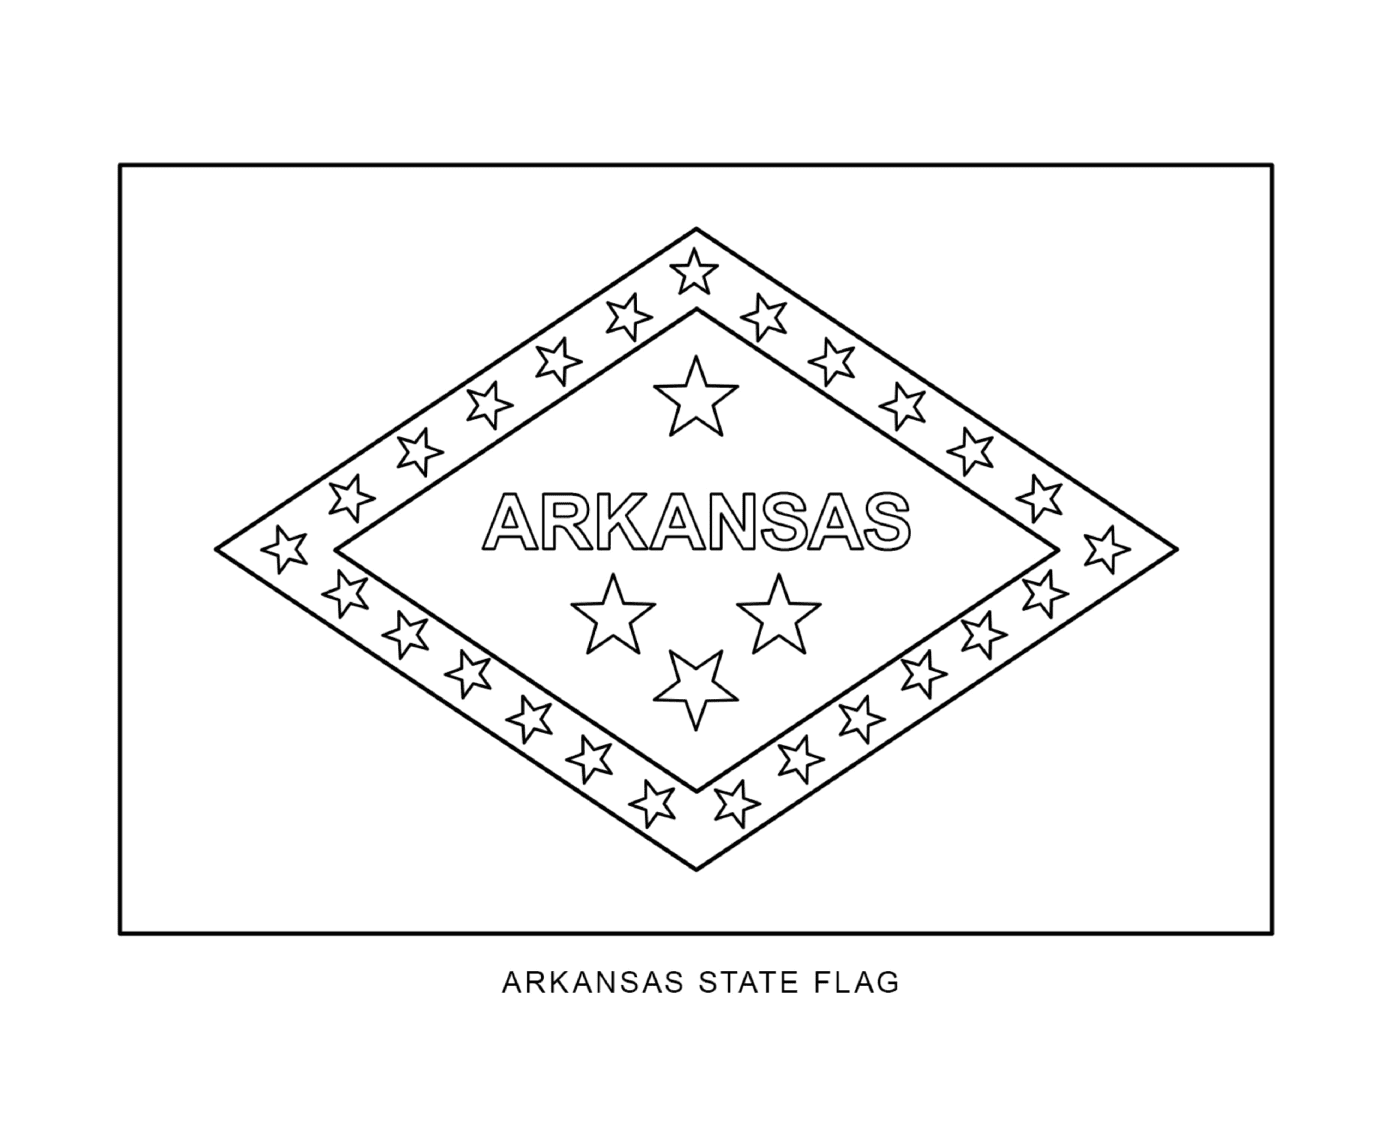  Bandiera dello Stato dell'Arkansas composta da stelle 